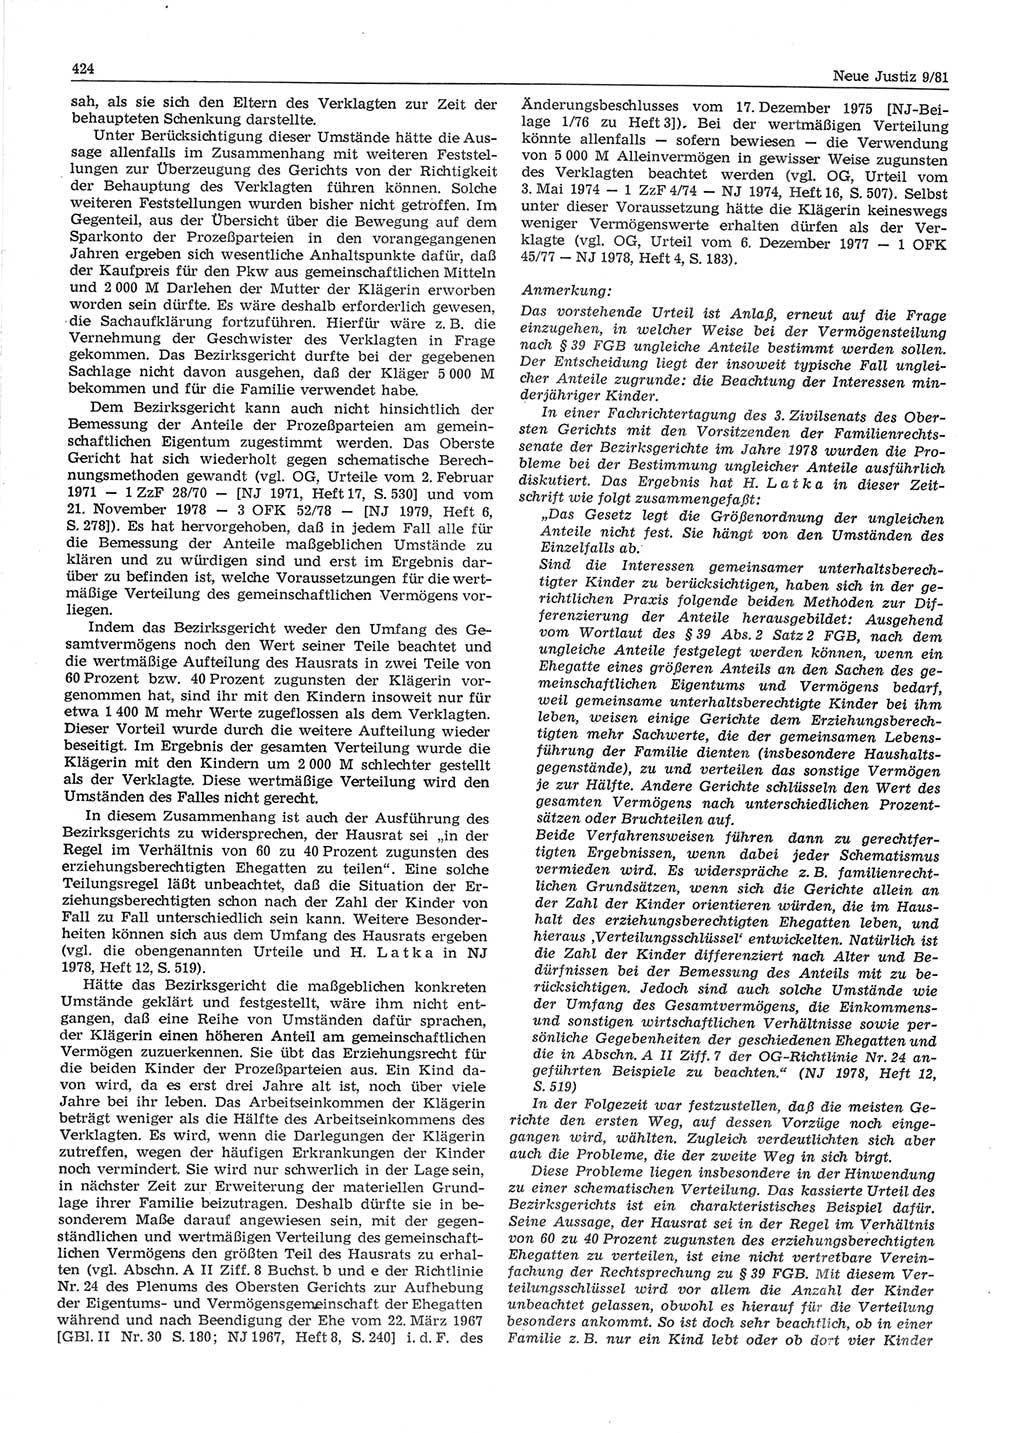 Neue Justiz (NJ), Zeitschrift für sozialistisches Recht und Gesetzlichkeit [Deutsche Demokratische Republik (DDR)], 35. Jahrgang 1981, Seite 424 (NJ DDR 1981, S. 424)